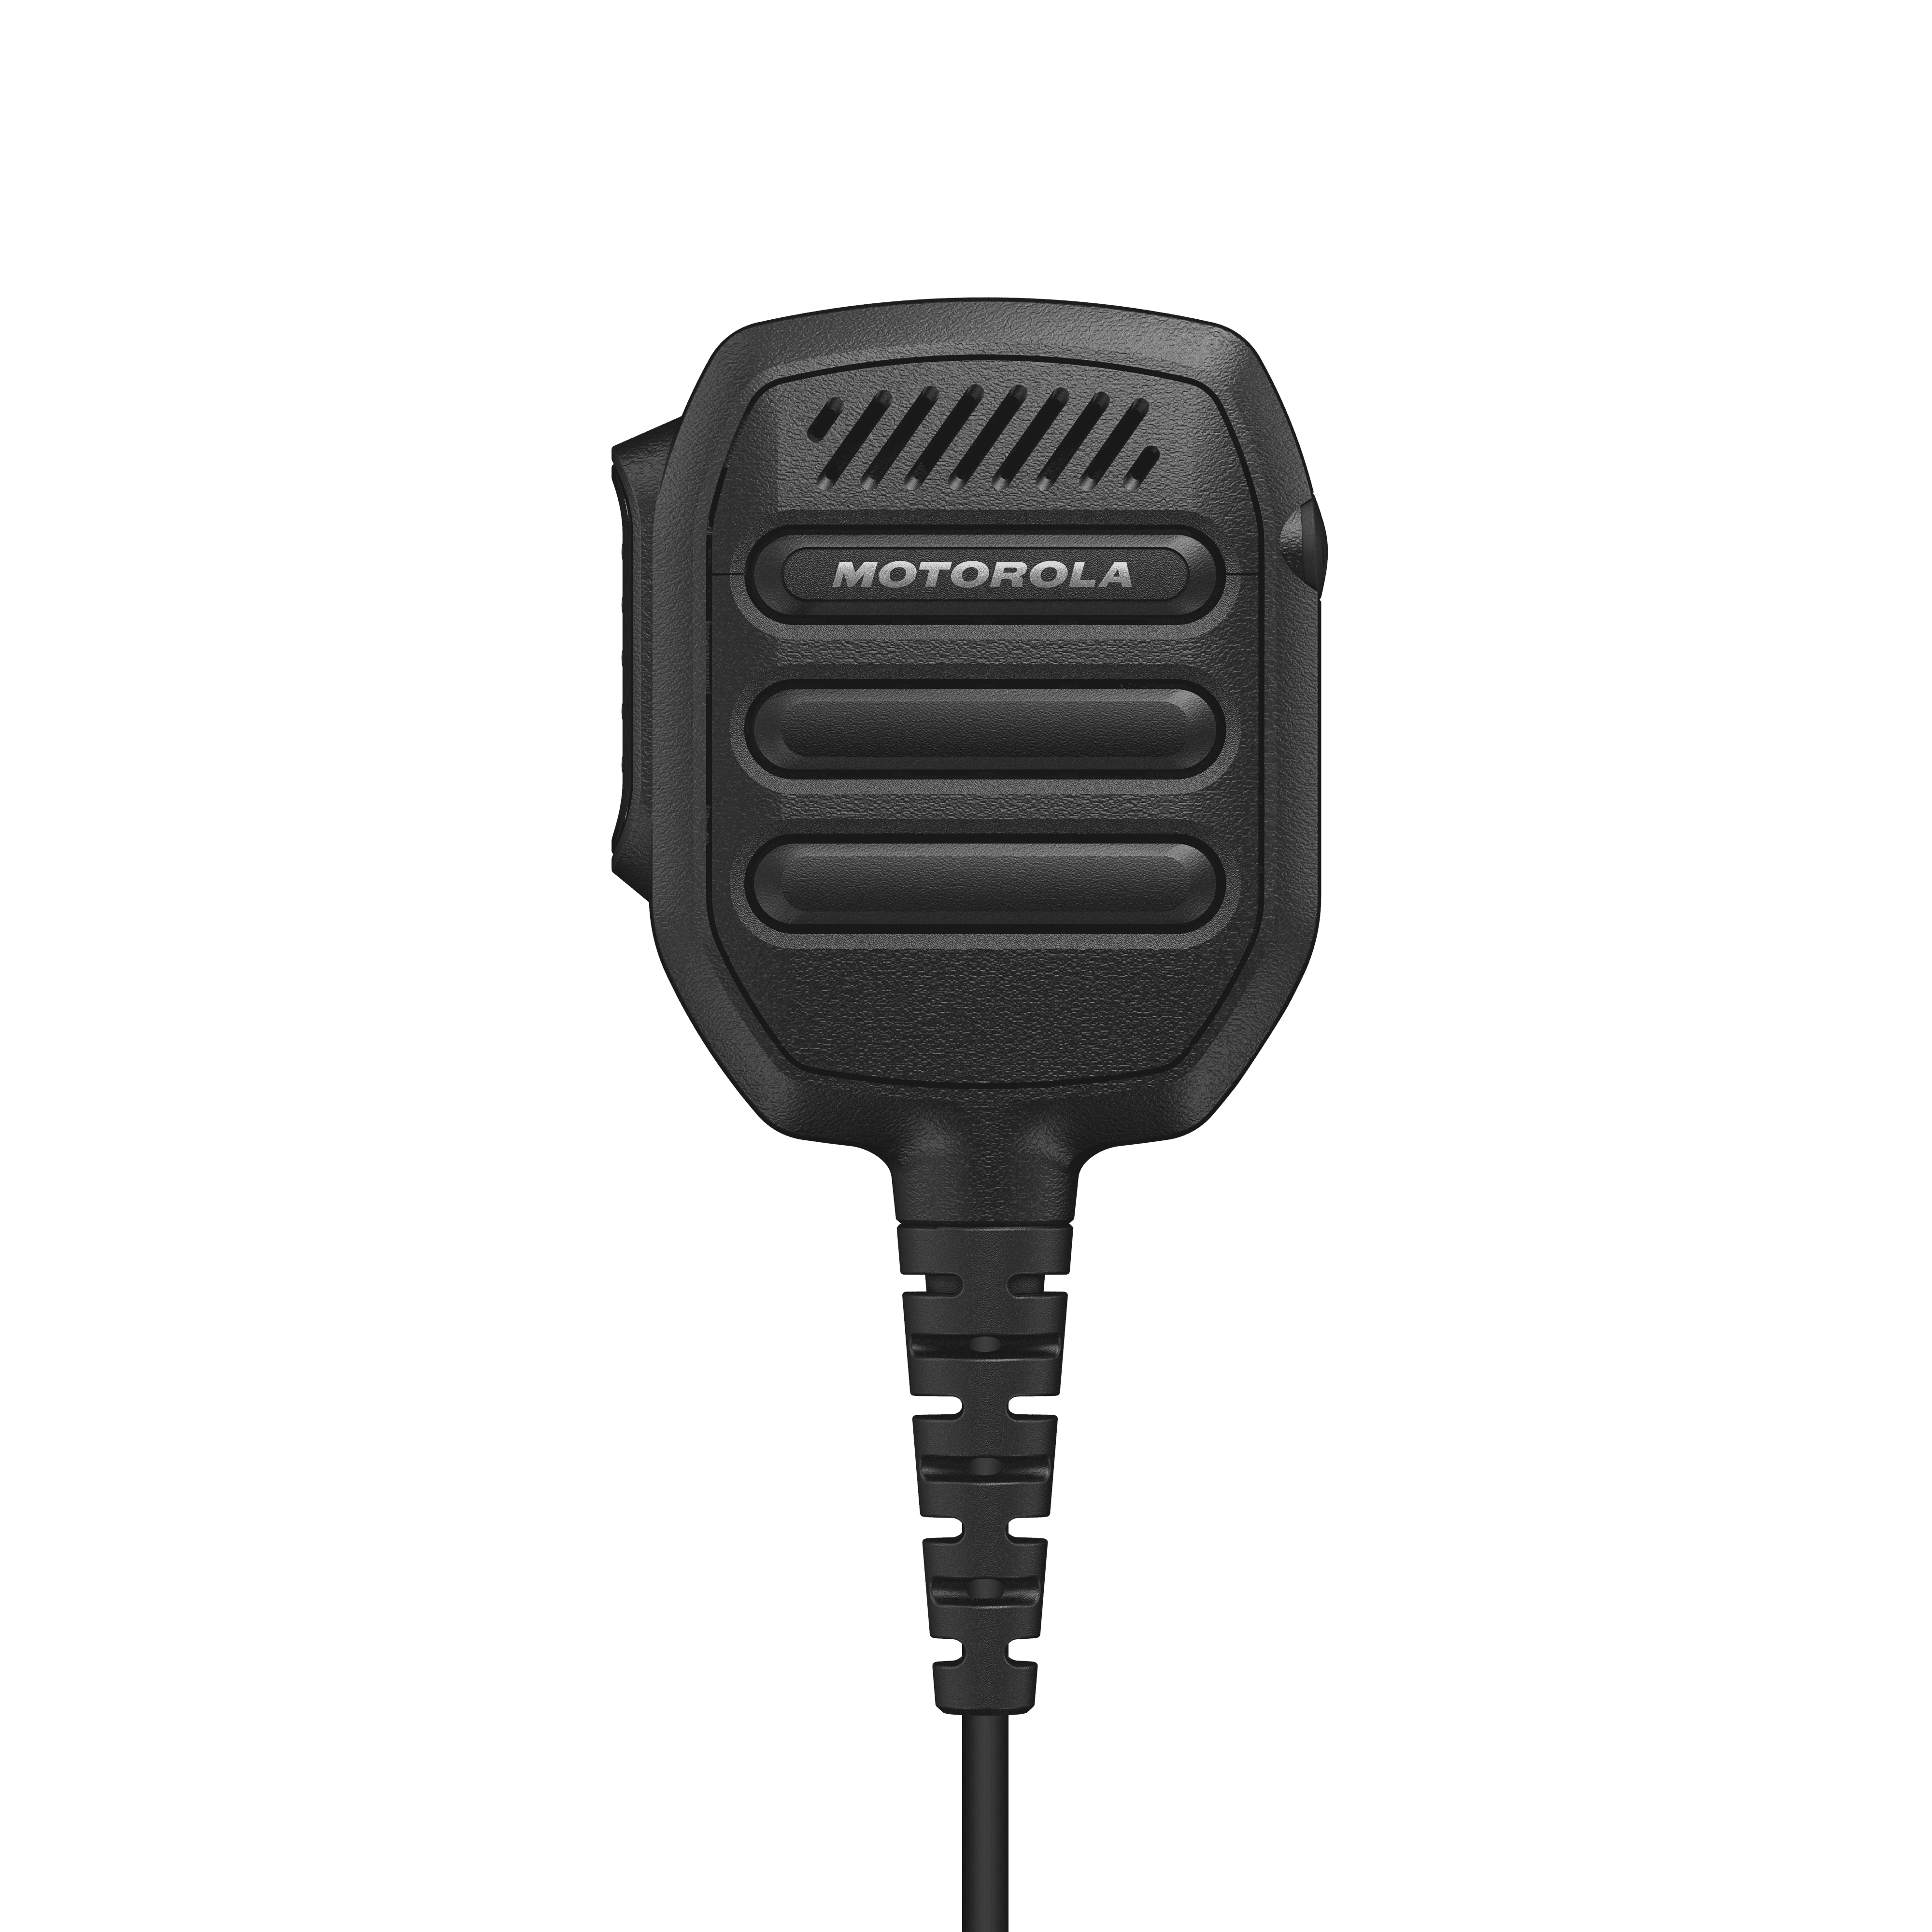 RM110 Lautsprechermikrofon mit 3,5 mm-Audiobuchse IP55